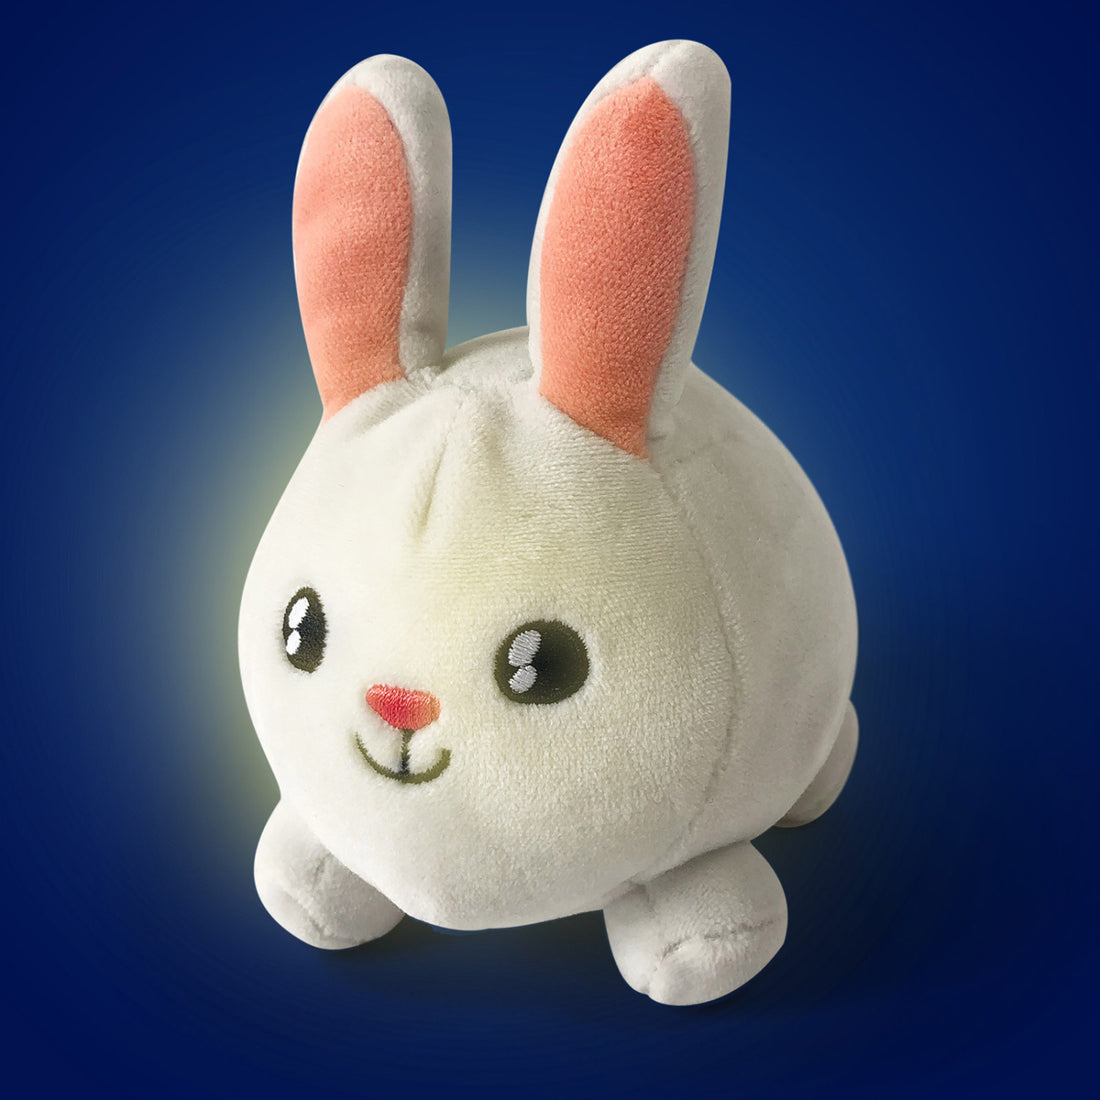 Mini peluche Luminoso - Conejo